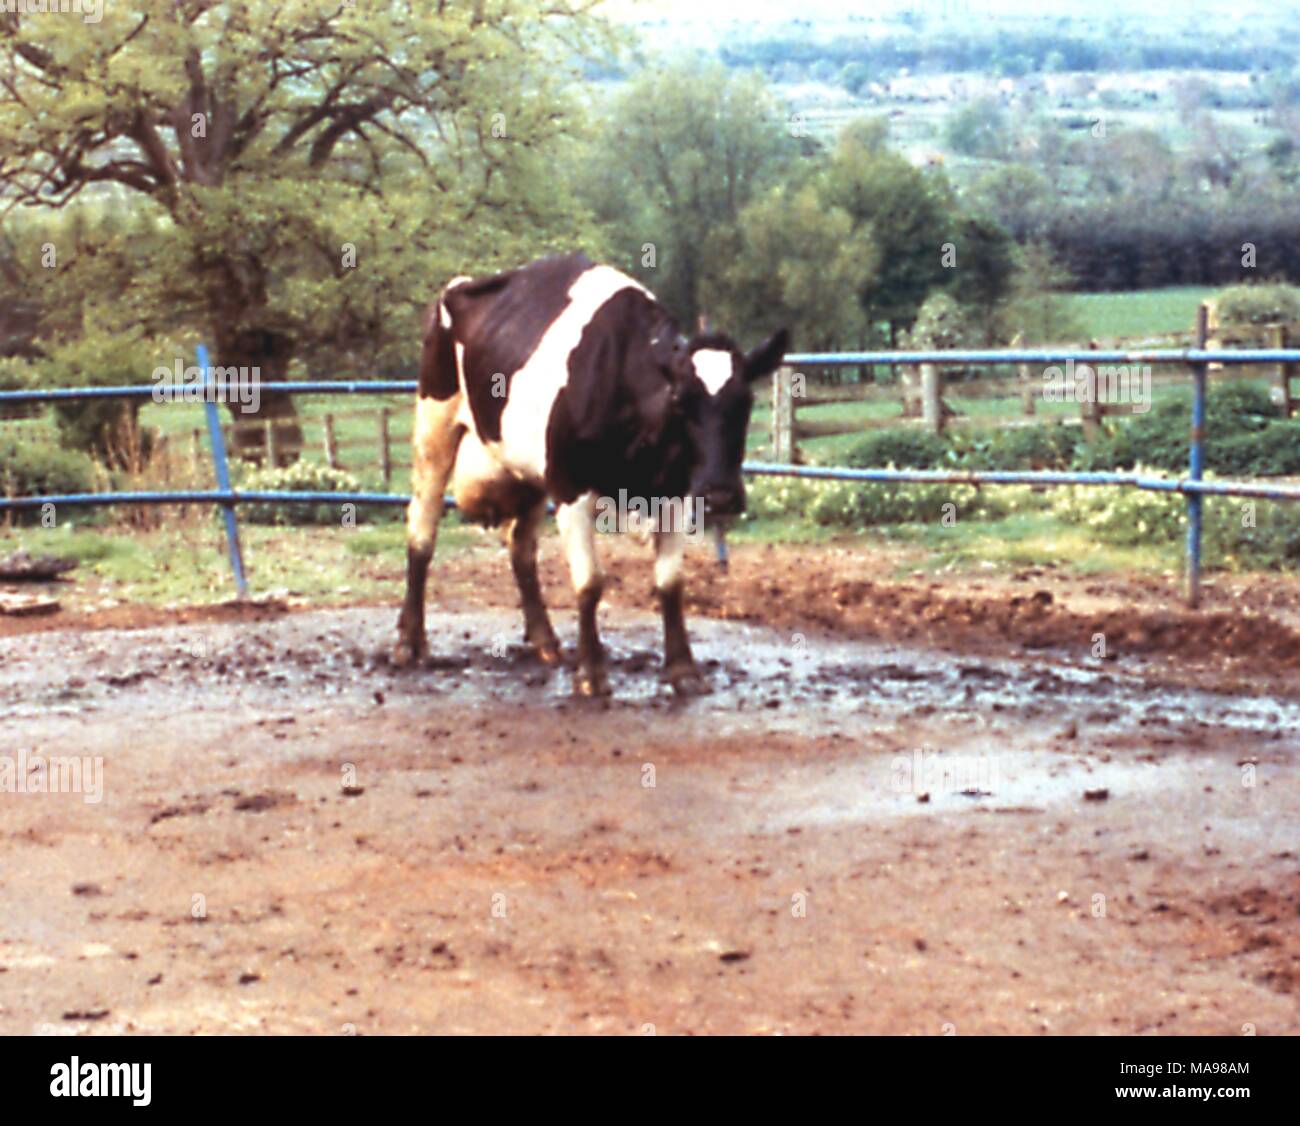 Vaca de pie en la zona restringida, afectadas por la encefalopatía espongiforme bovina (EEB), comúnmente conocida como "enfermedad de las vacas locas", de 2003. Imagen cortesía del Departamento de Agricultura de EE.UU. - Servicio de Inspección de Sanidad Animal y Vegetal (APHIS). () Foto de stock